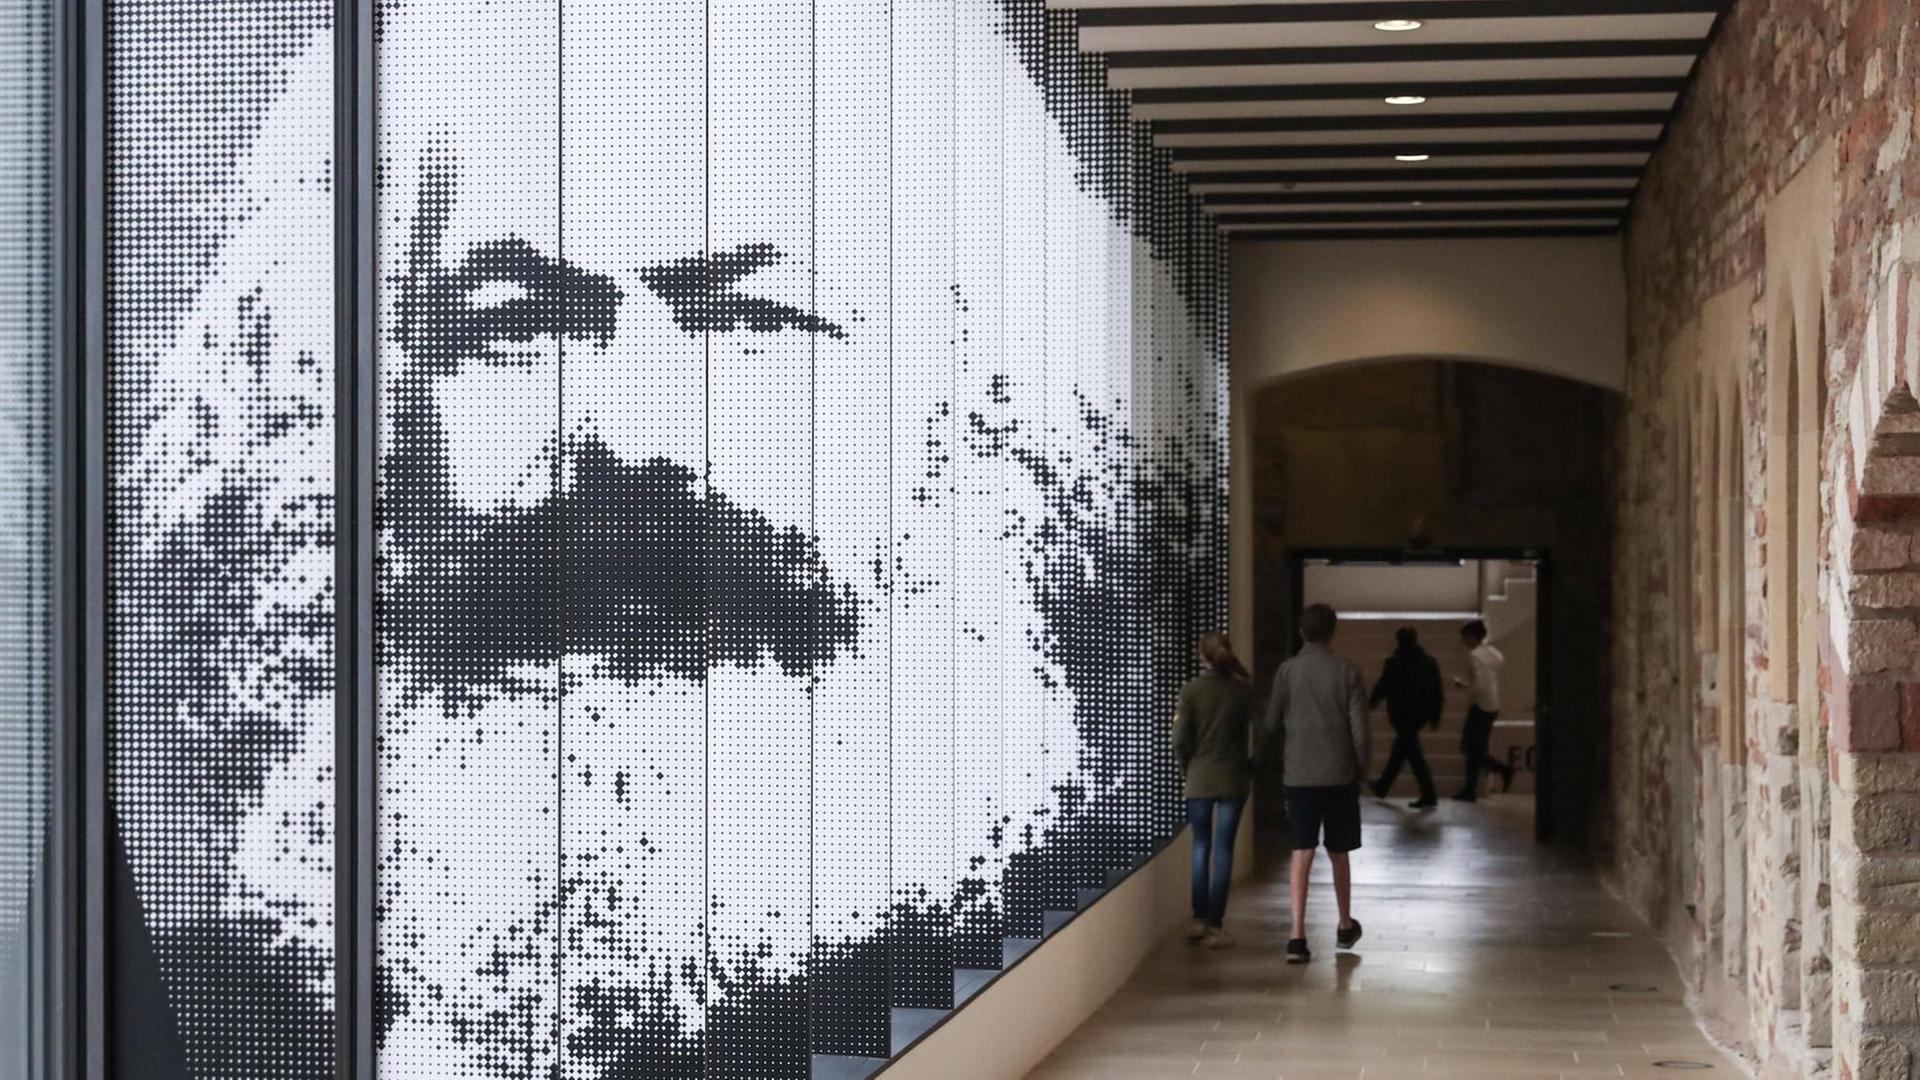 Die Ausstellung "Karl Marx 1818 - 1883" in Trier